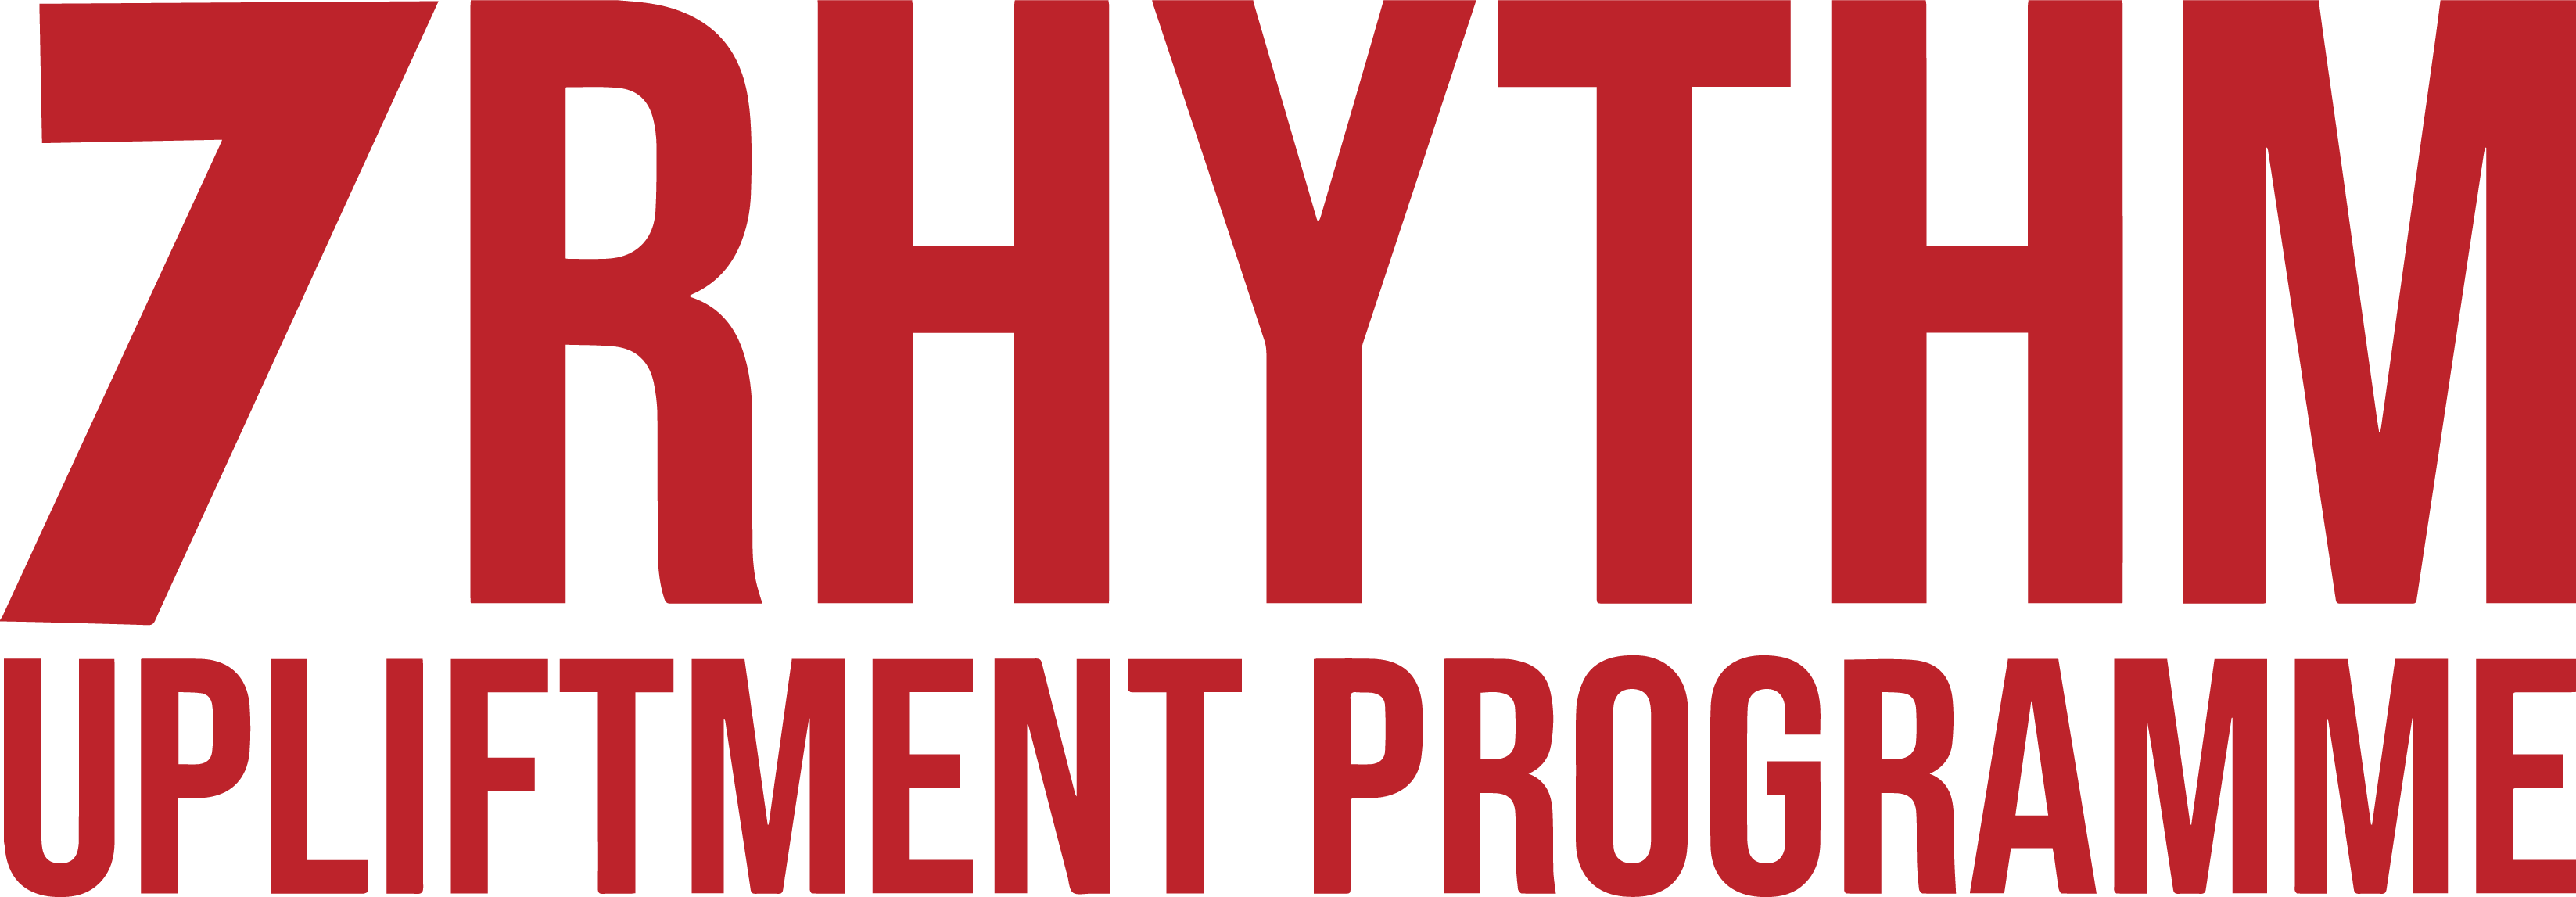 Seven Rhythm Upliftment Program